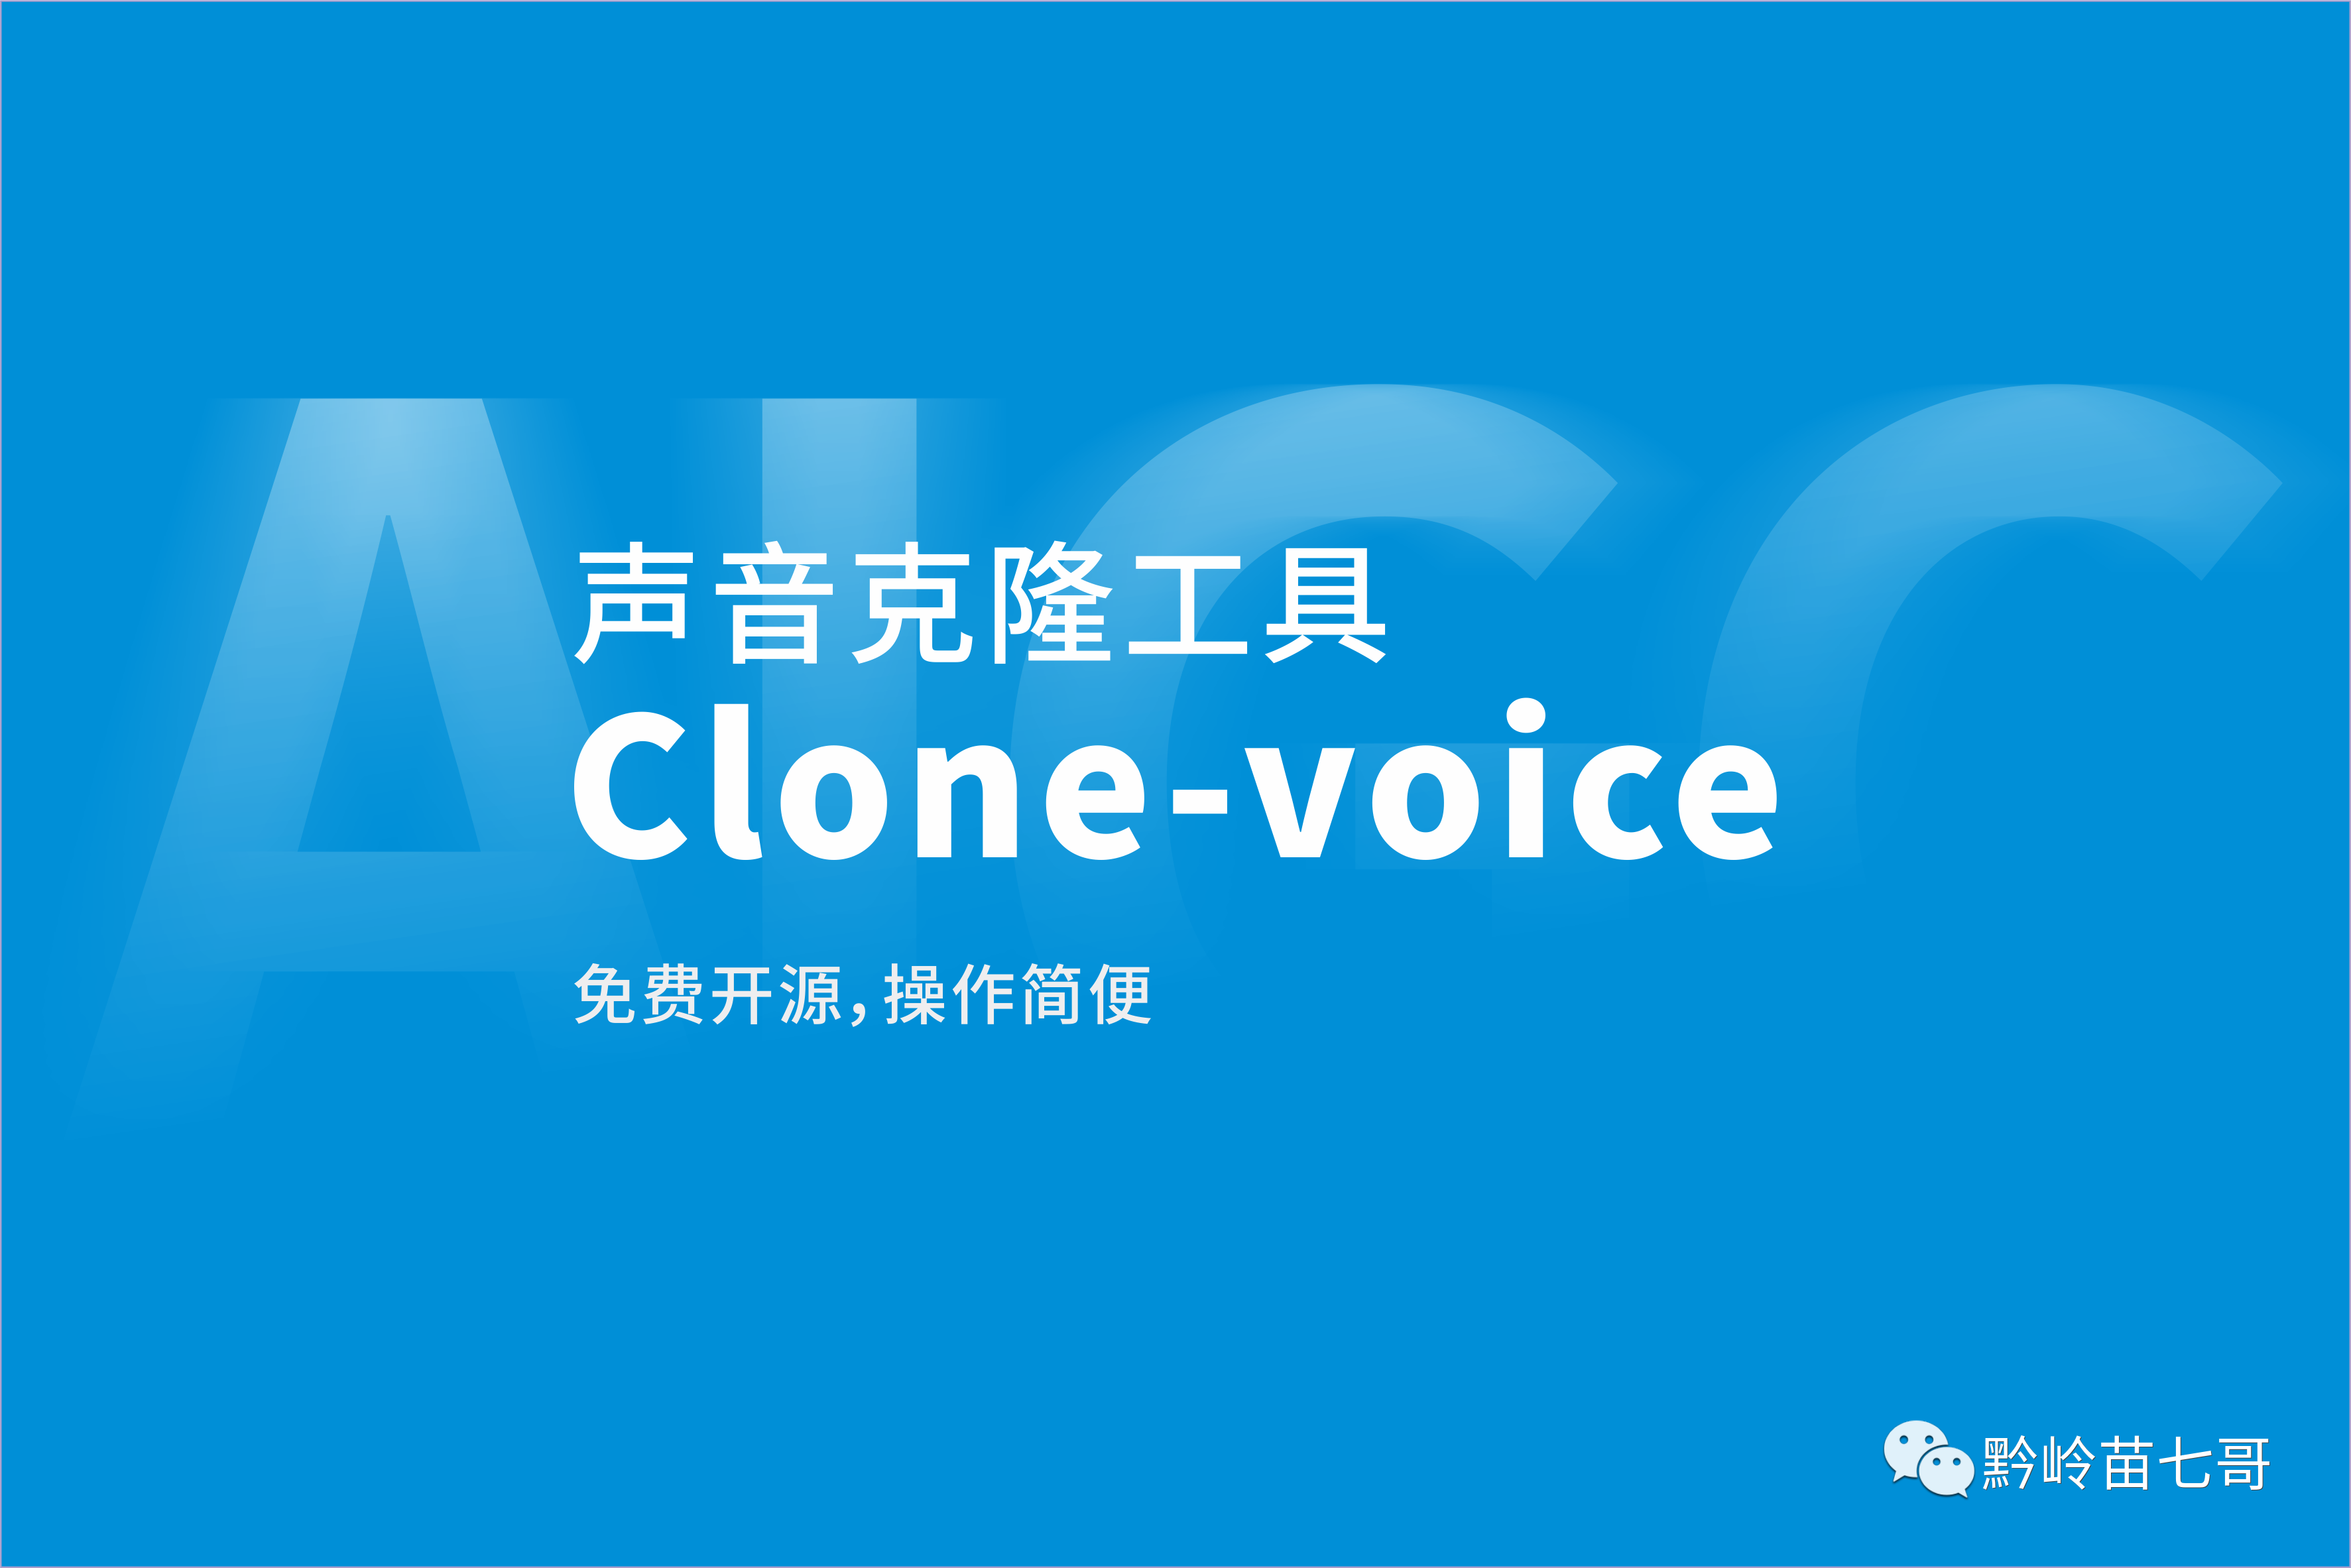 Clone-Voice ：簡易的AI聲音克隆工具，免費開源下載